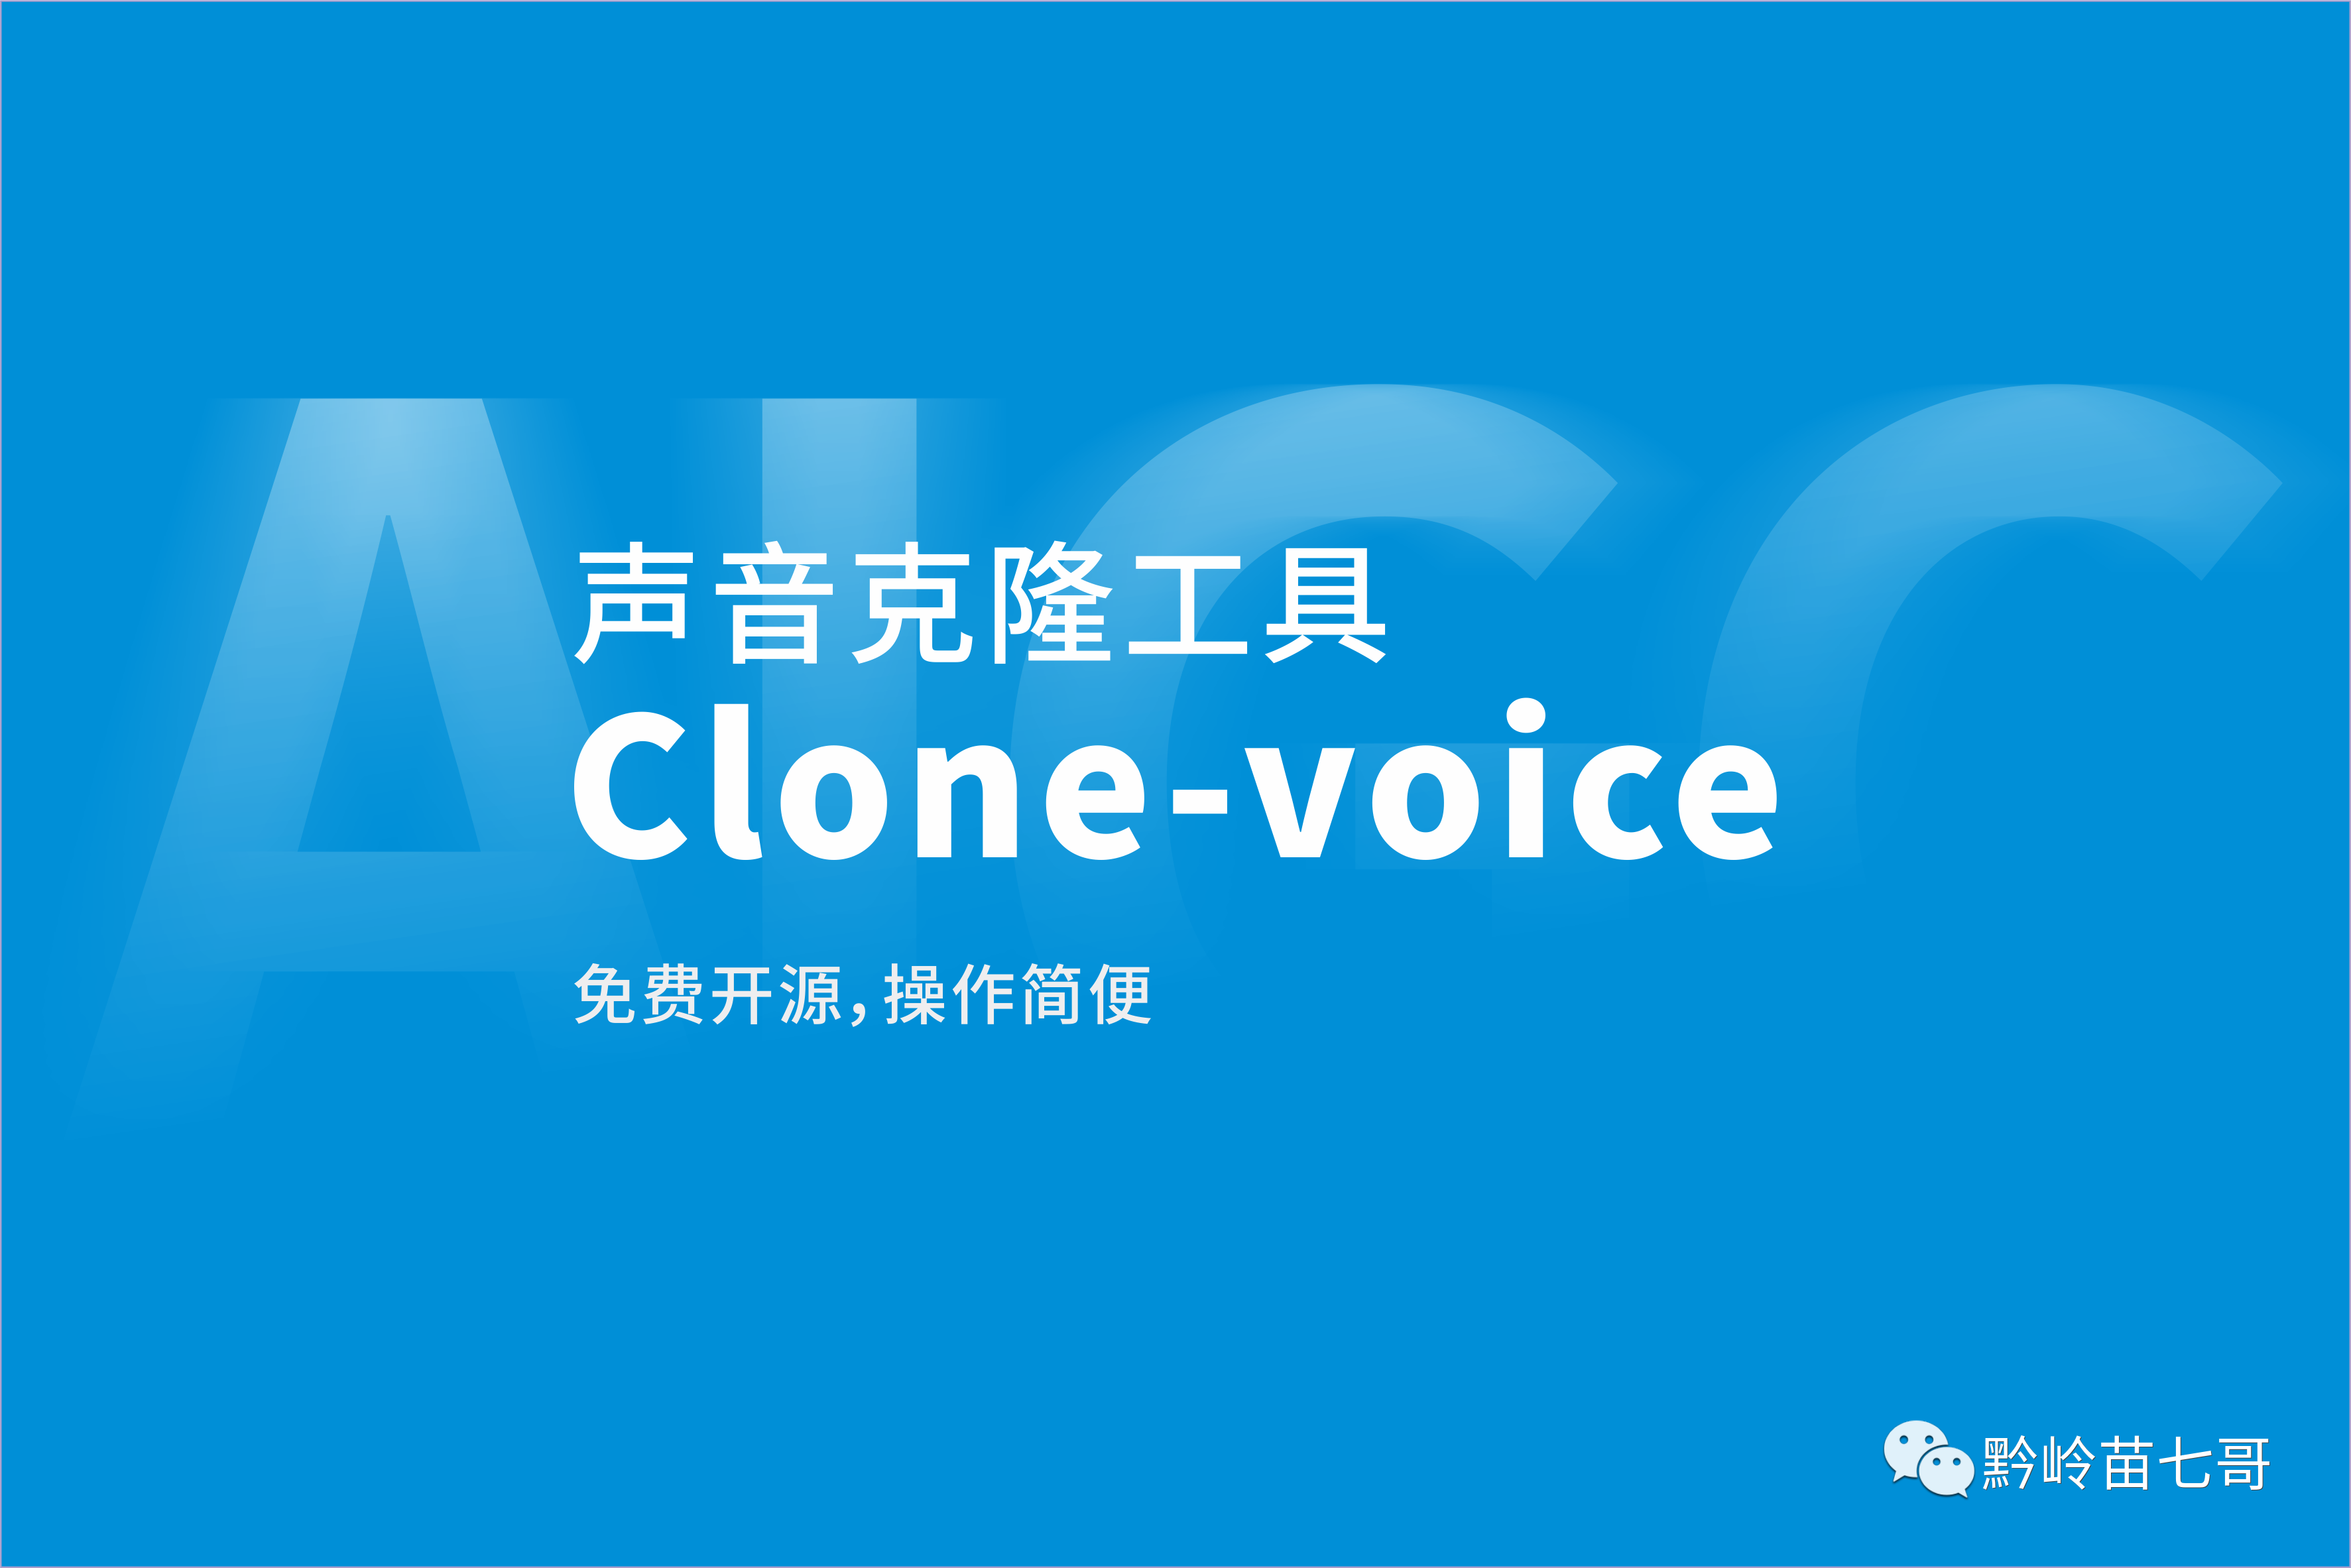 Clone-Voice ：簡易的AI聲音克隆工具，免費開源下載